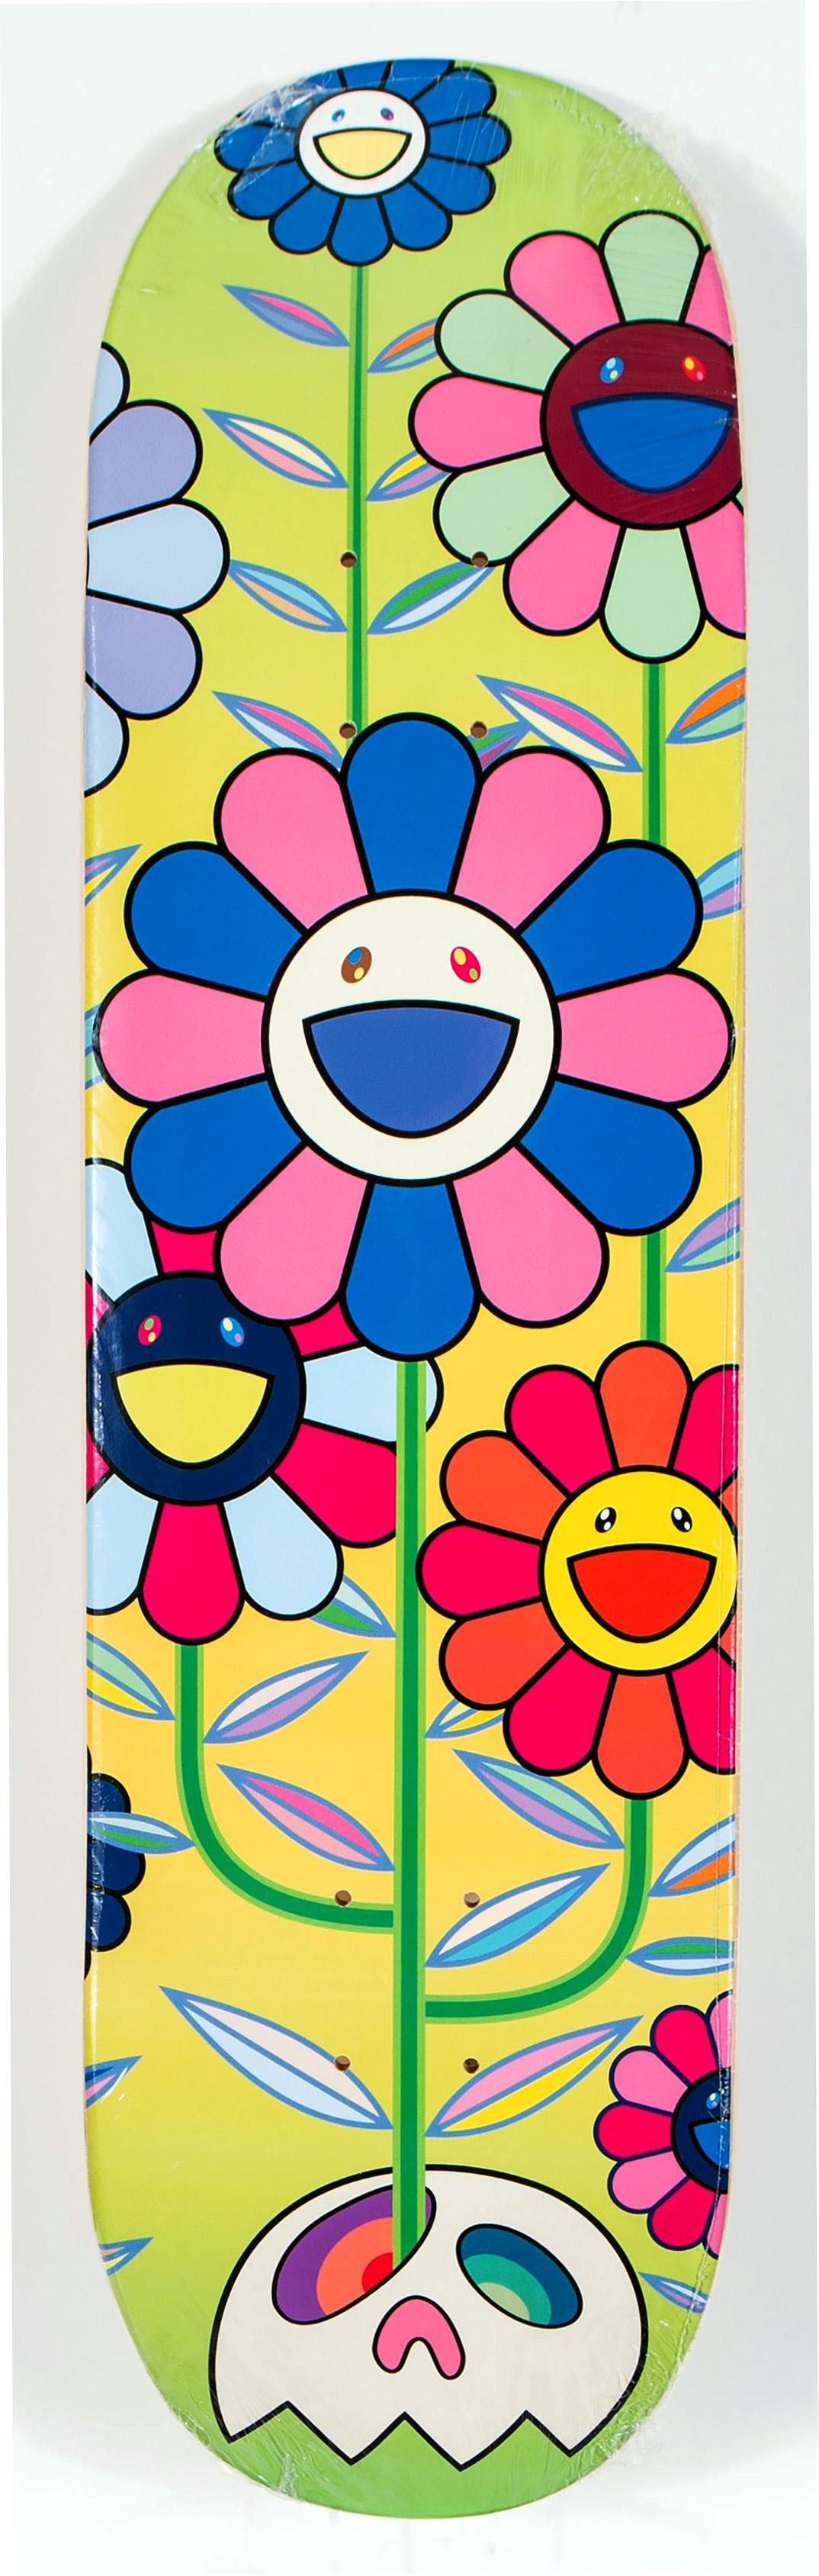 murakami flower skateboard